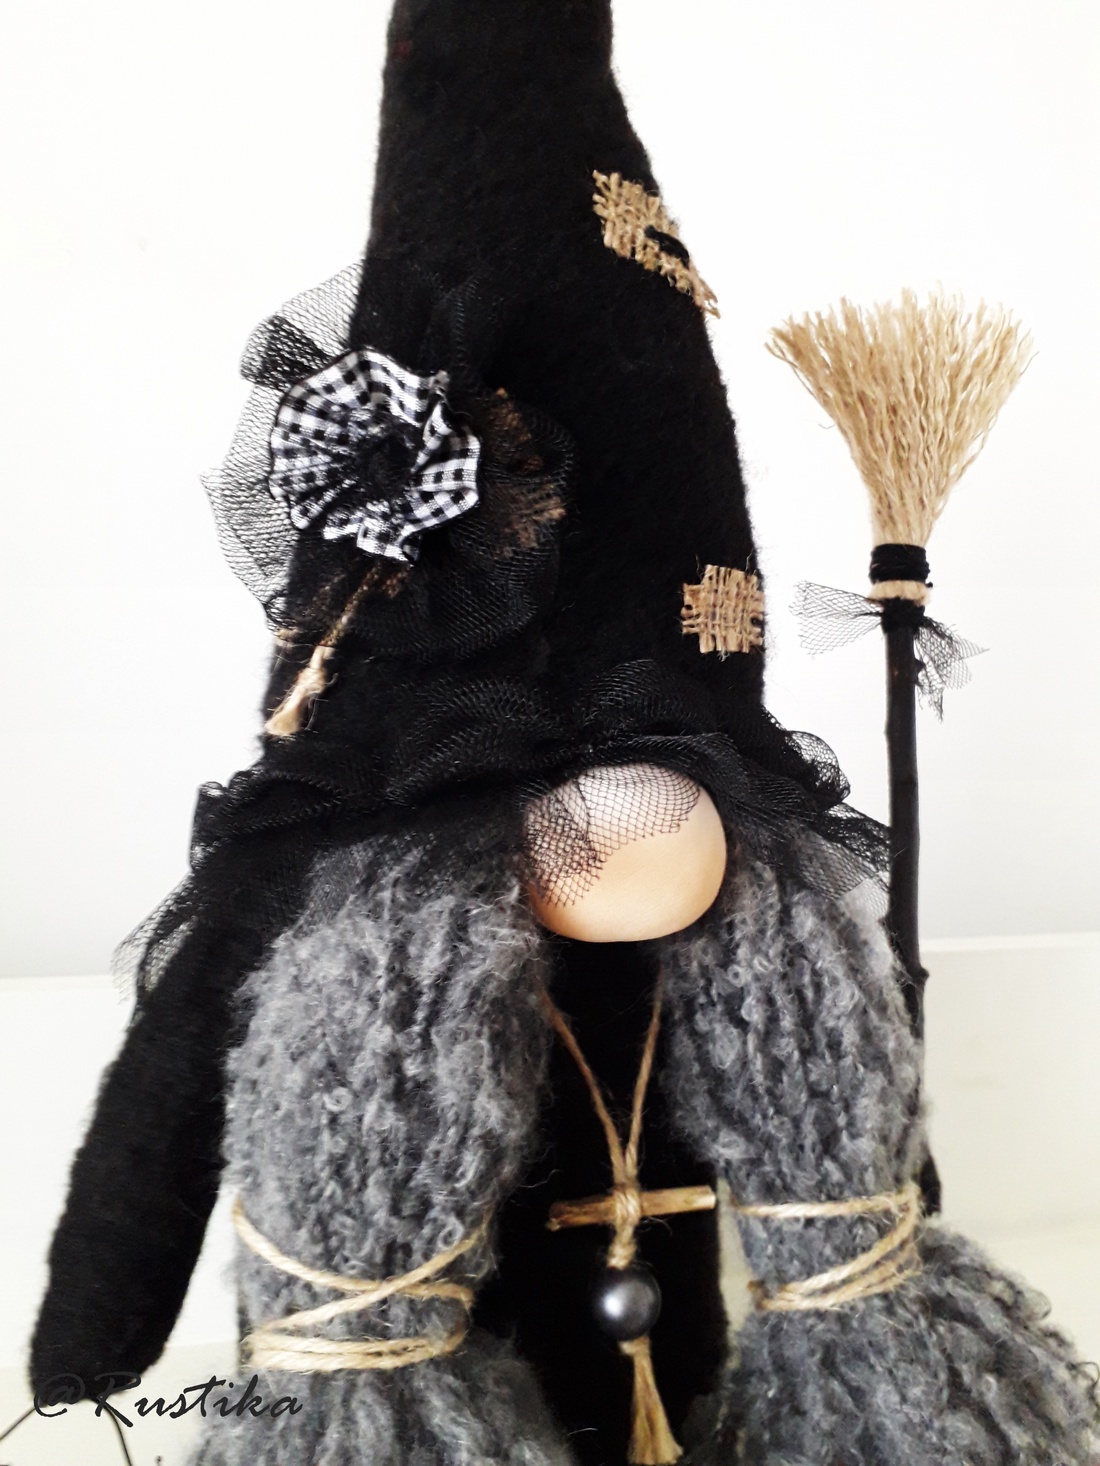 Gnom de colecție, Zelda Gnom vrăjitoare, Obsidian Woods Collection - accesorii locuință - accesorii pentru decorat casa - elfi - Artynos.ro